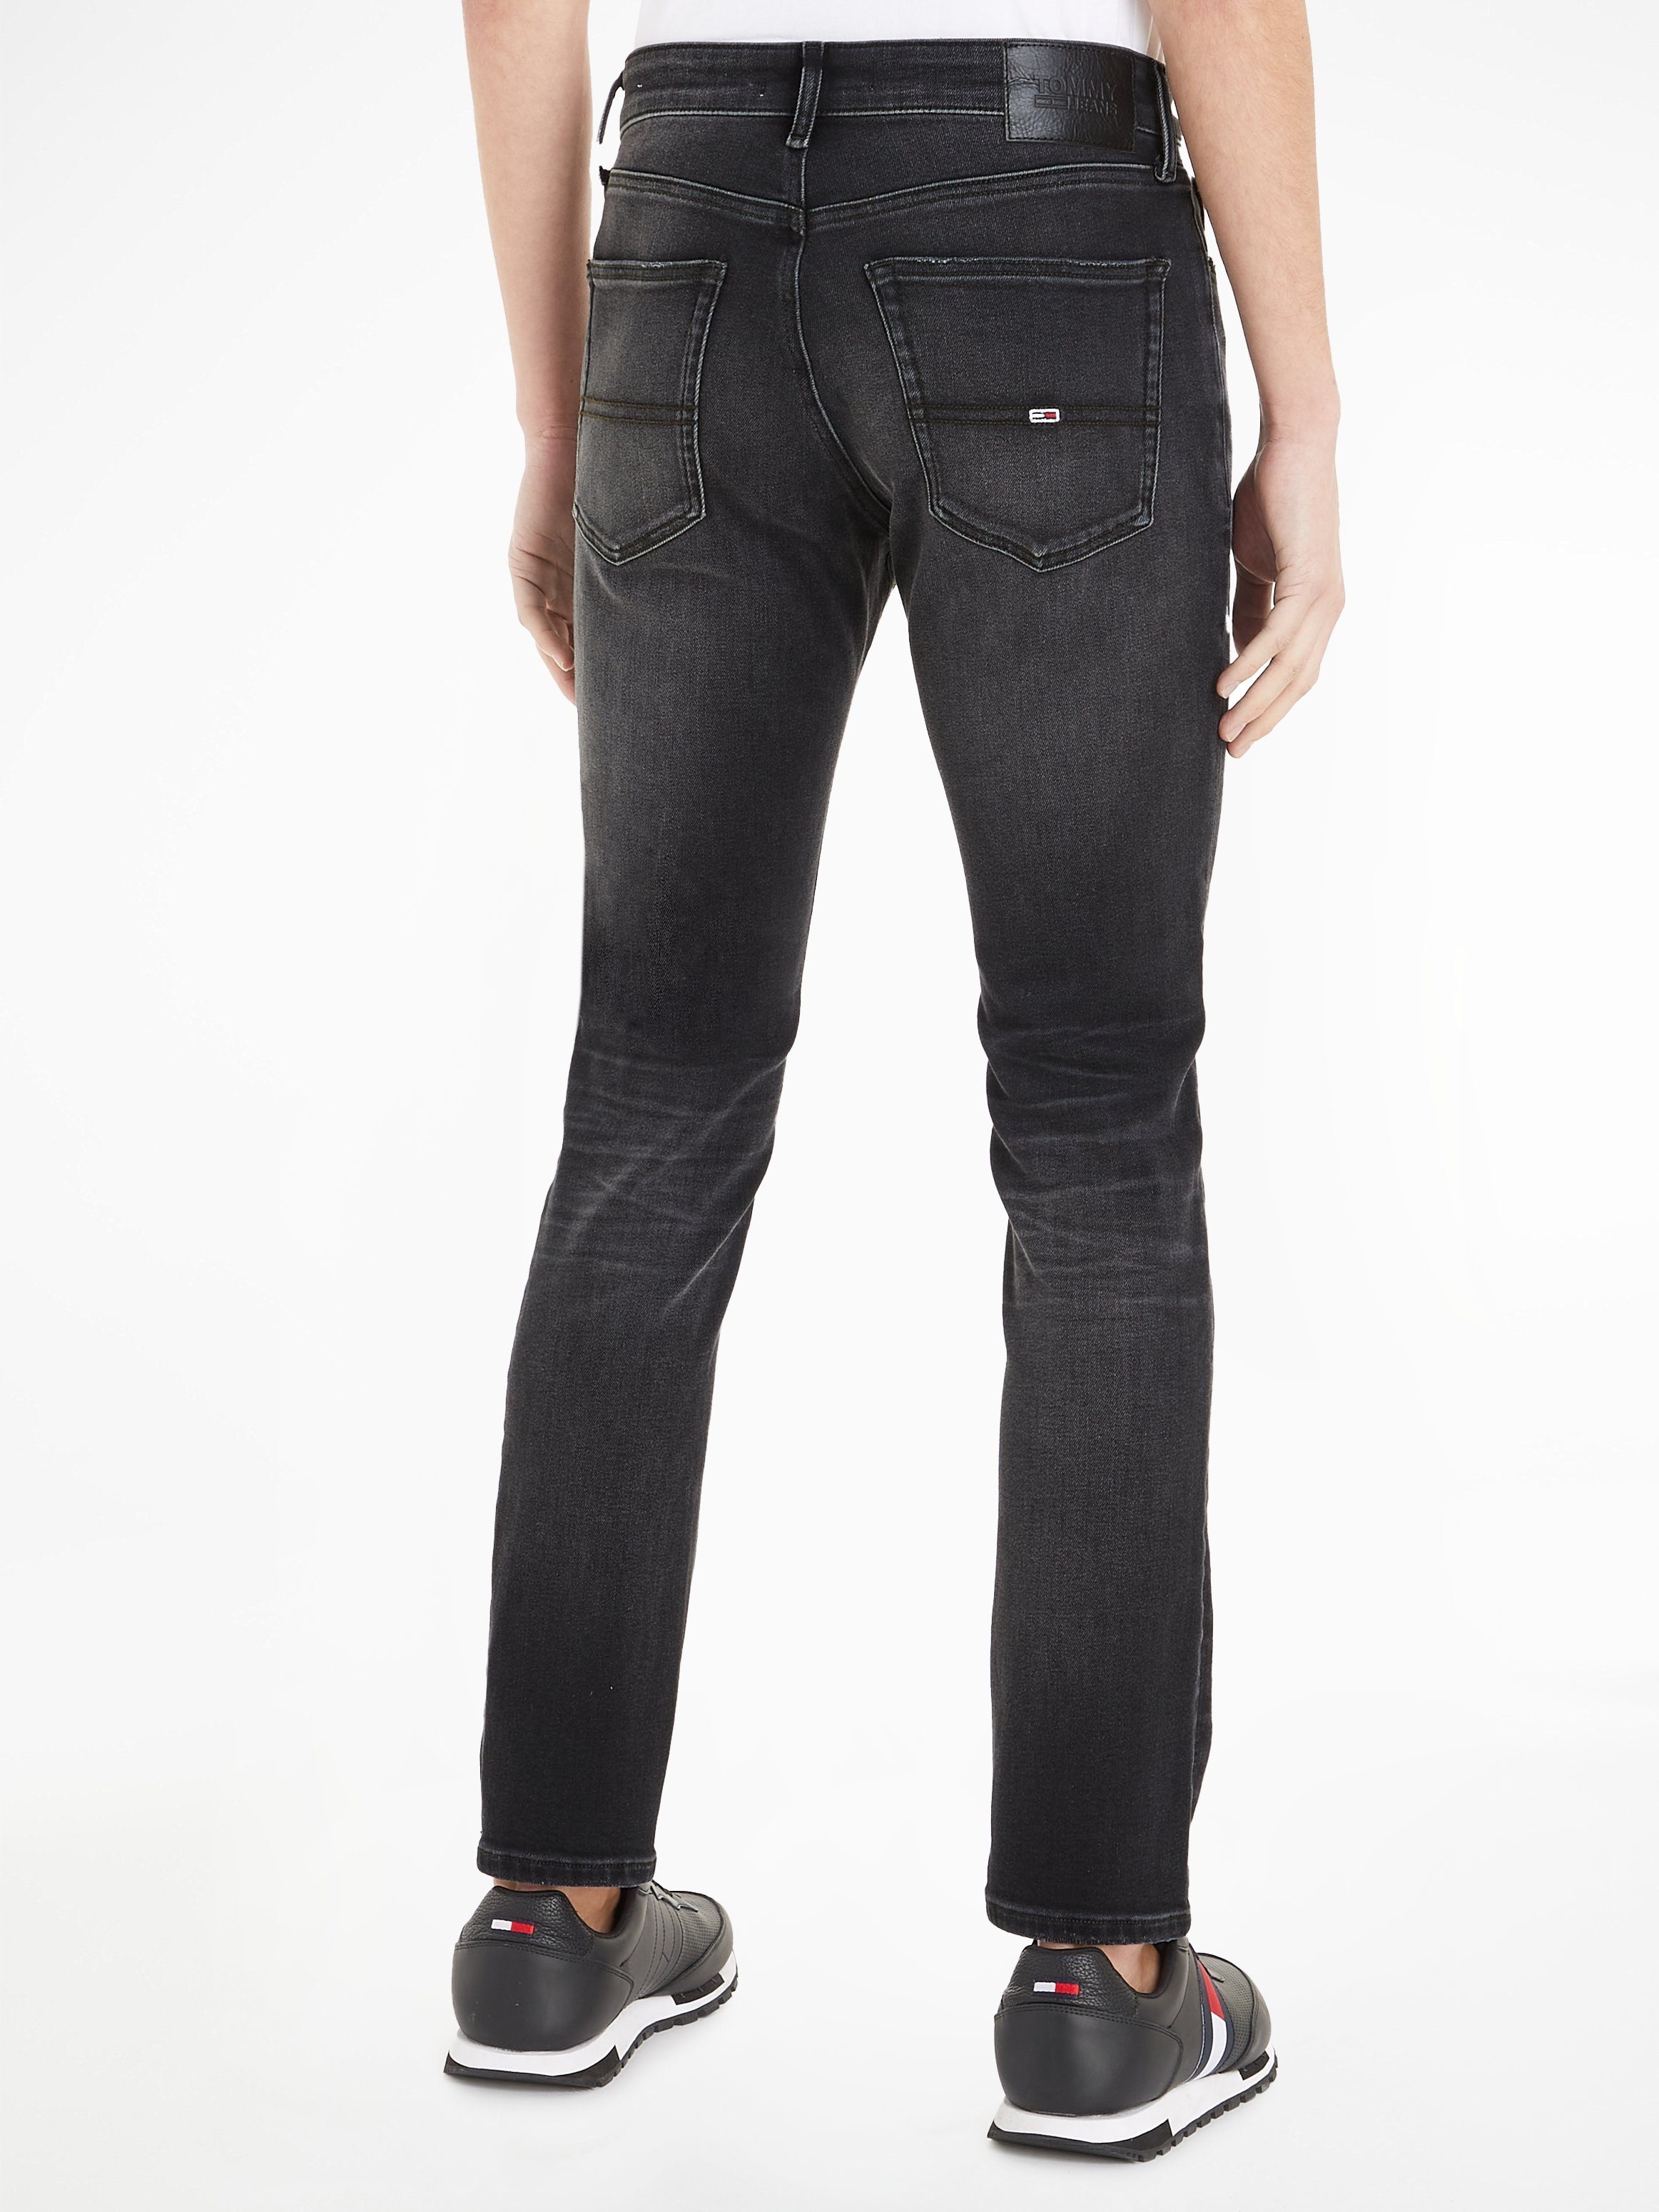 Jeans Black Denim SLIM SCANTON 5-Pocket-Jeans Tommy